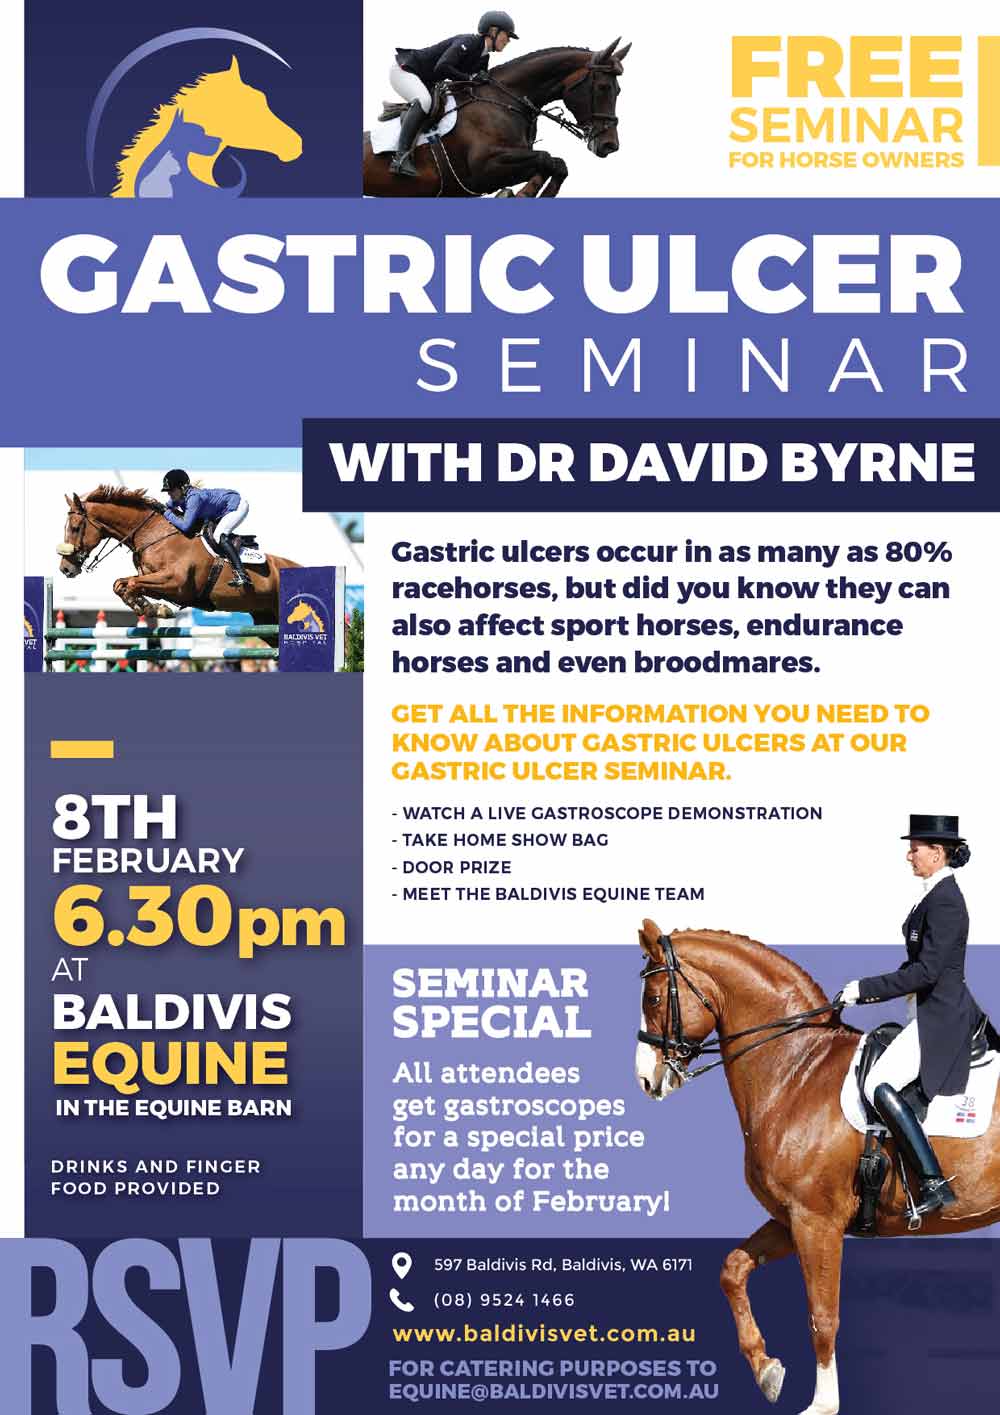 bvh-gastric-ulcer-seminar-8th-feb-2018